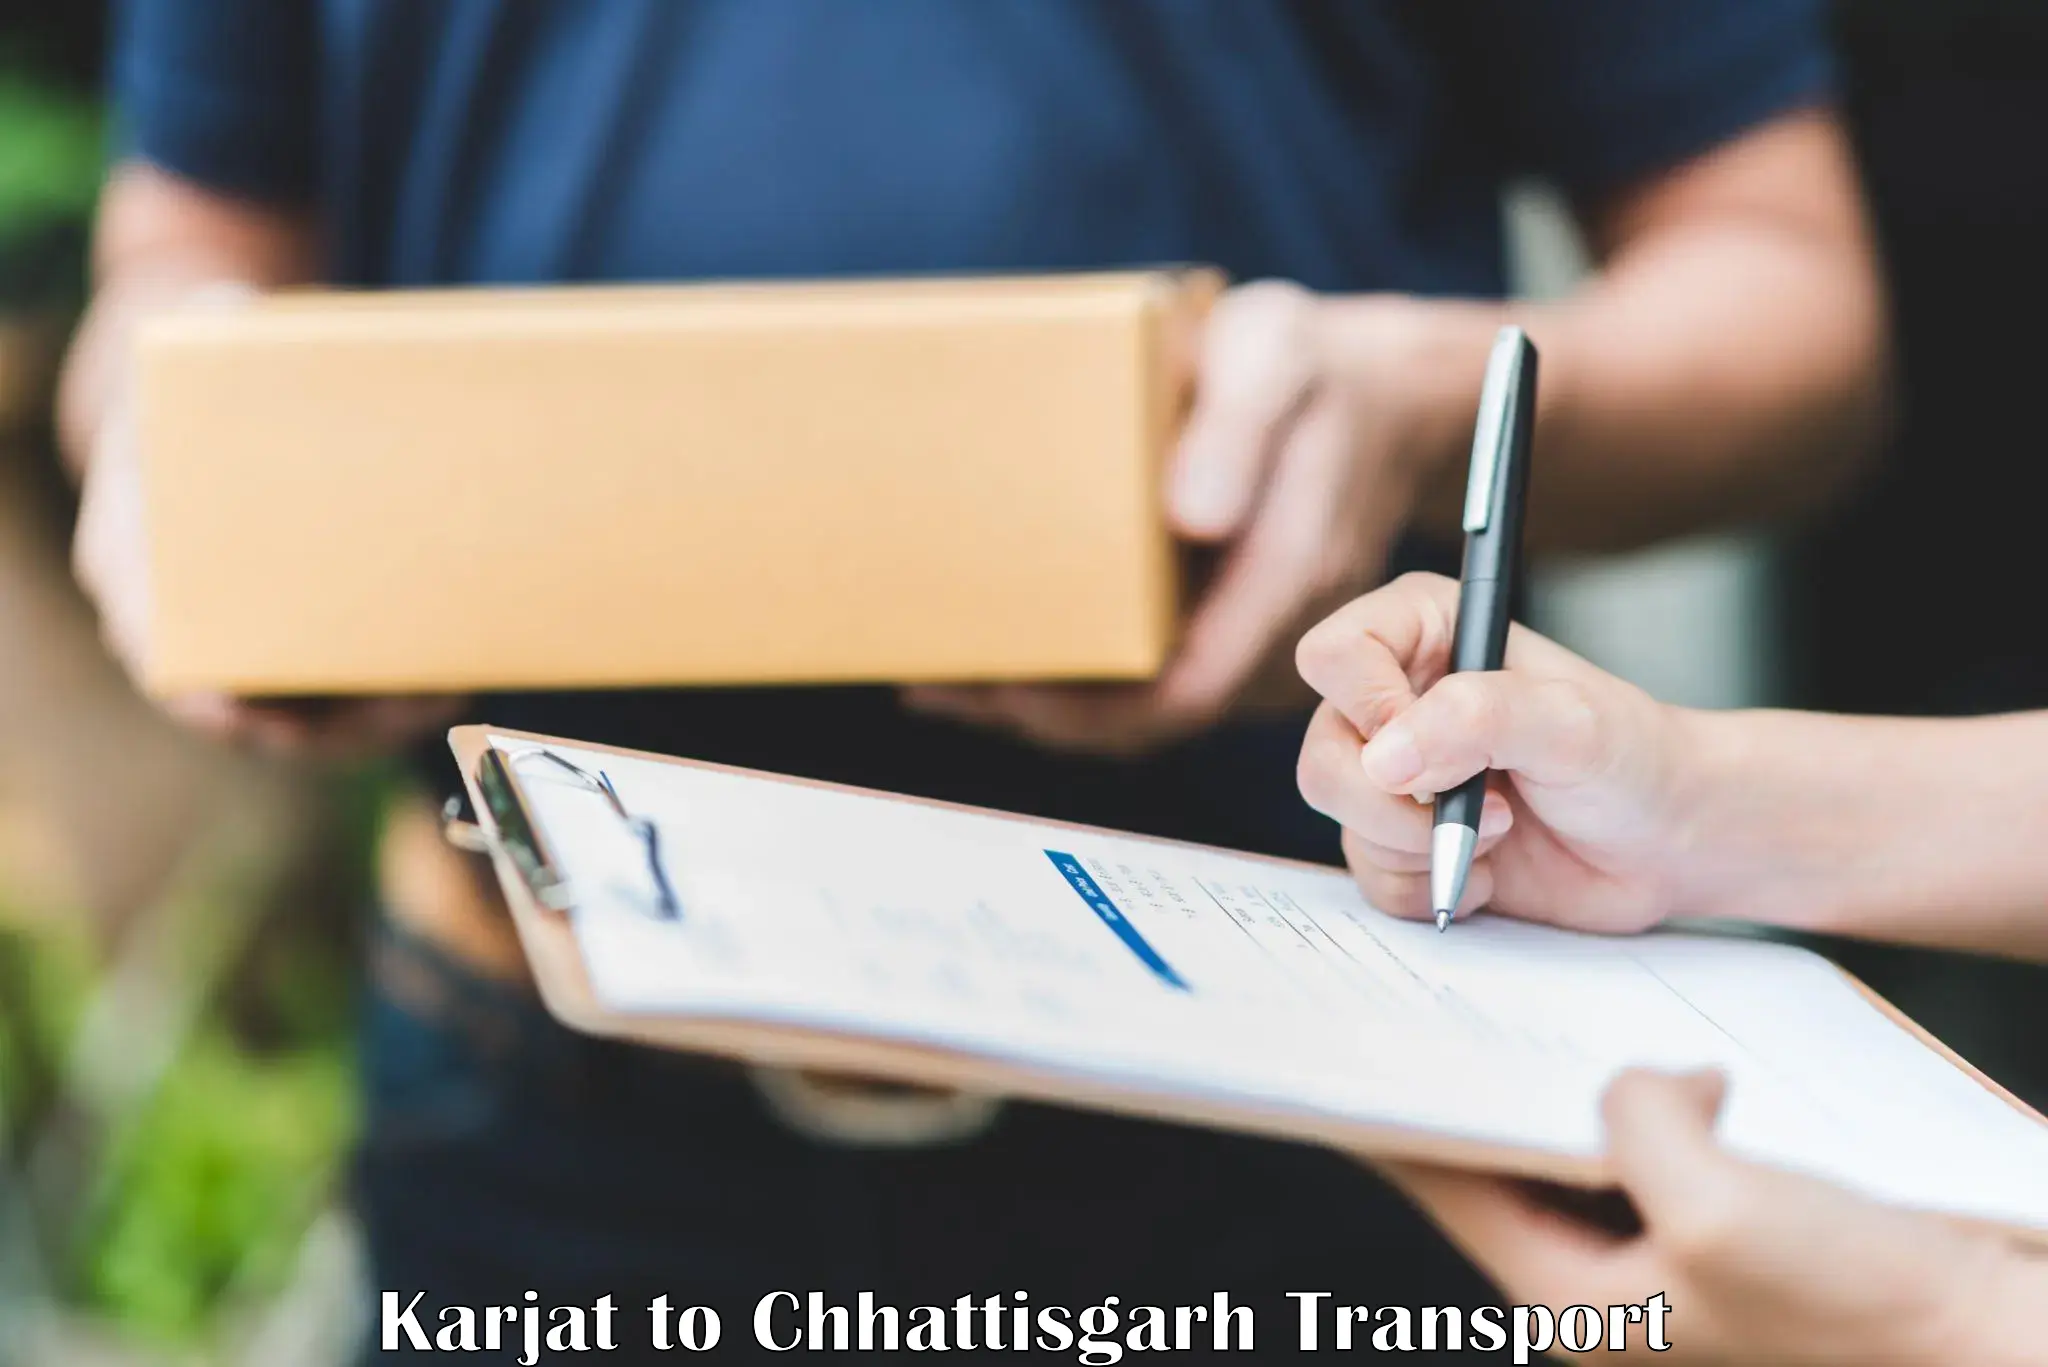 All India transport service Karjat to Wadrafnagar